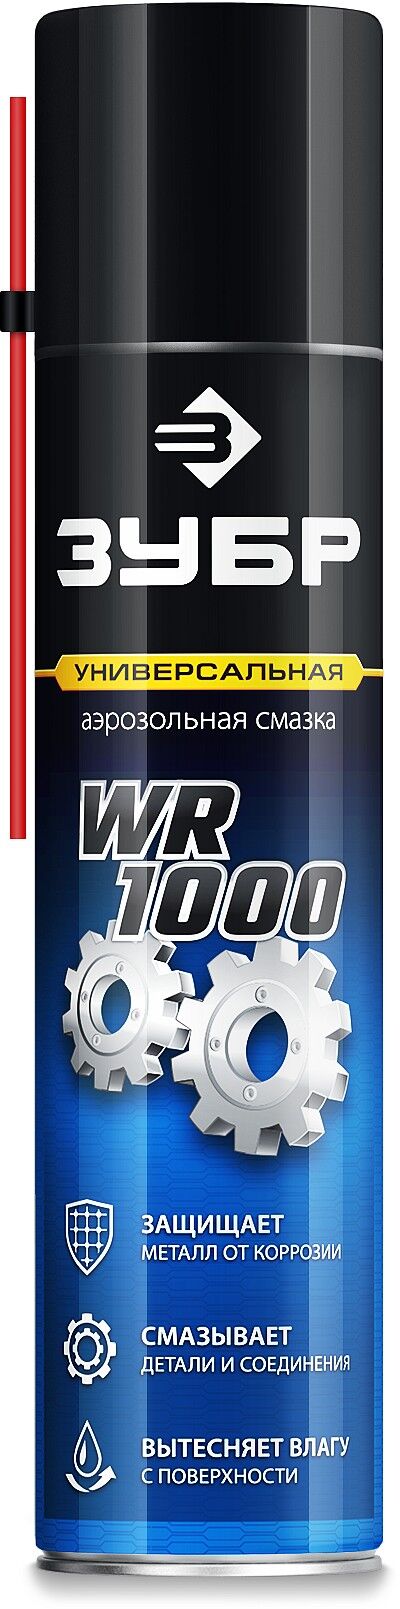 Смазка многофункциональная аэрозольная ЗУБР WR-1000 400 мл, средство для тысячи применений, ПРОФЕССИОНАЛ (41442)